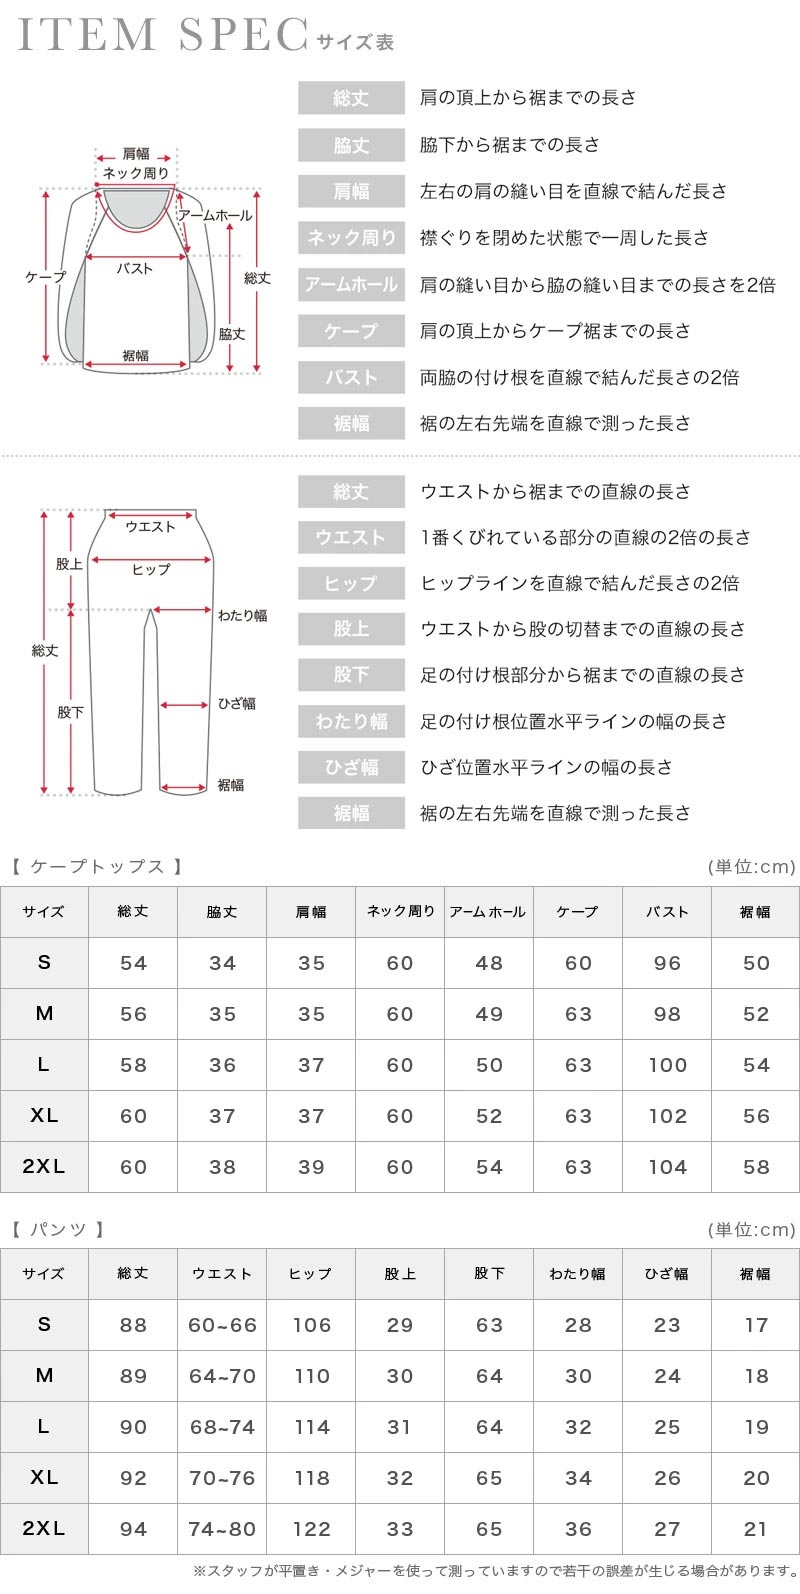 テーパードパンツセットケープデザインセットパーティードレスのサイズ表